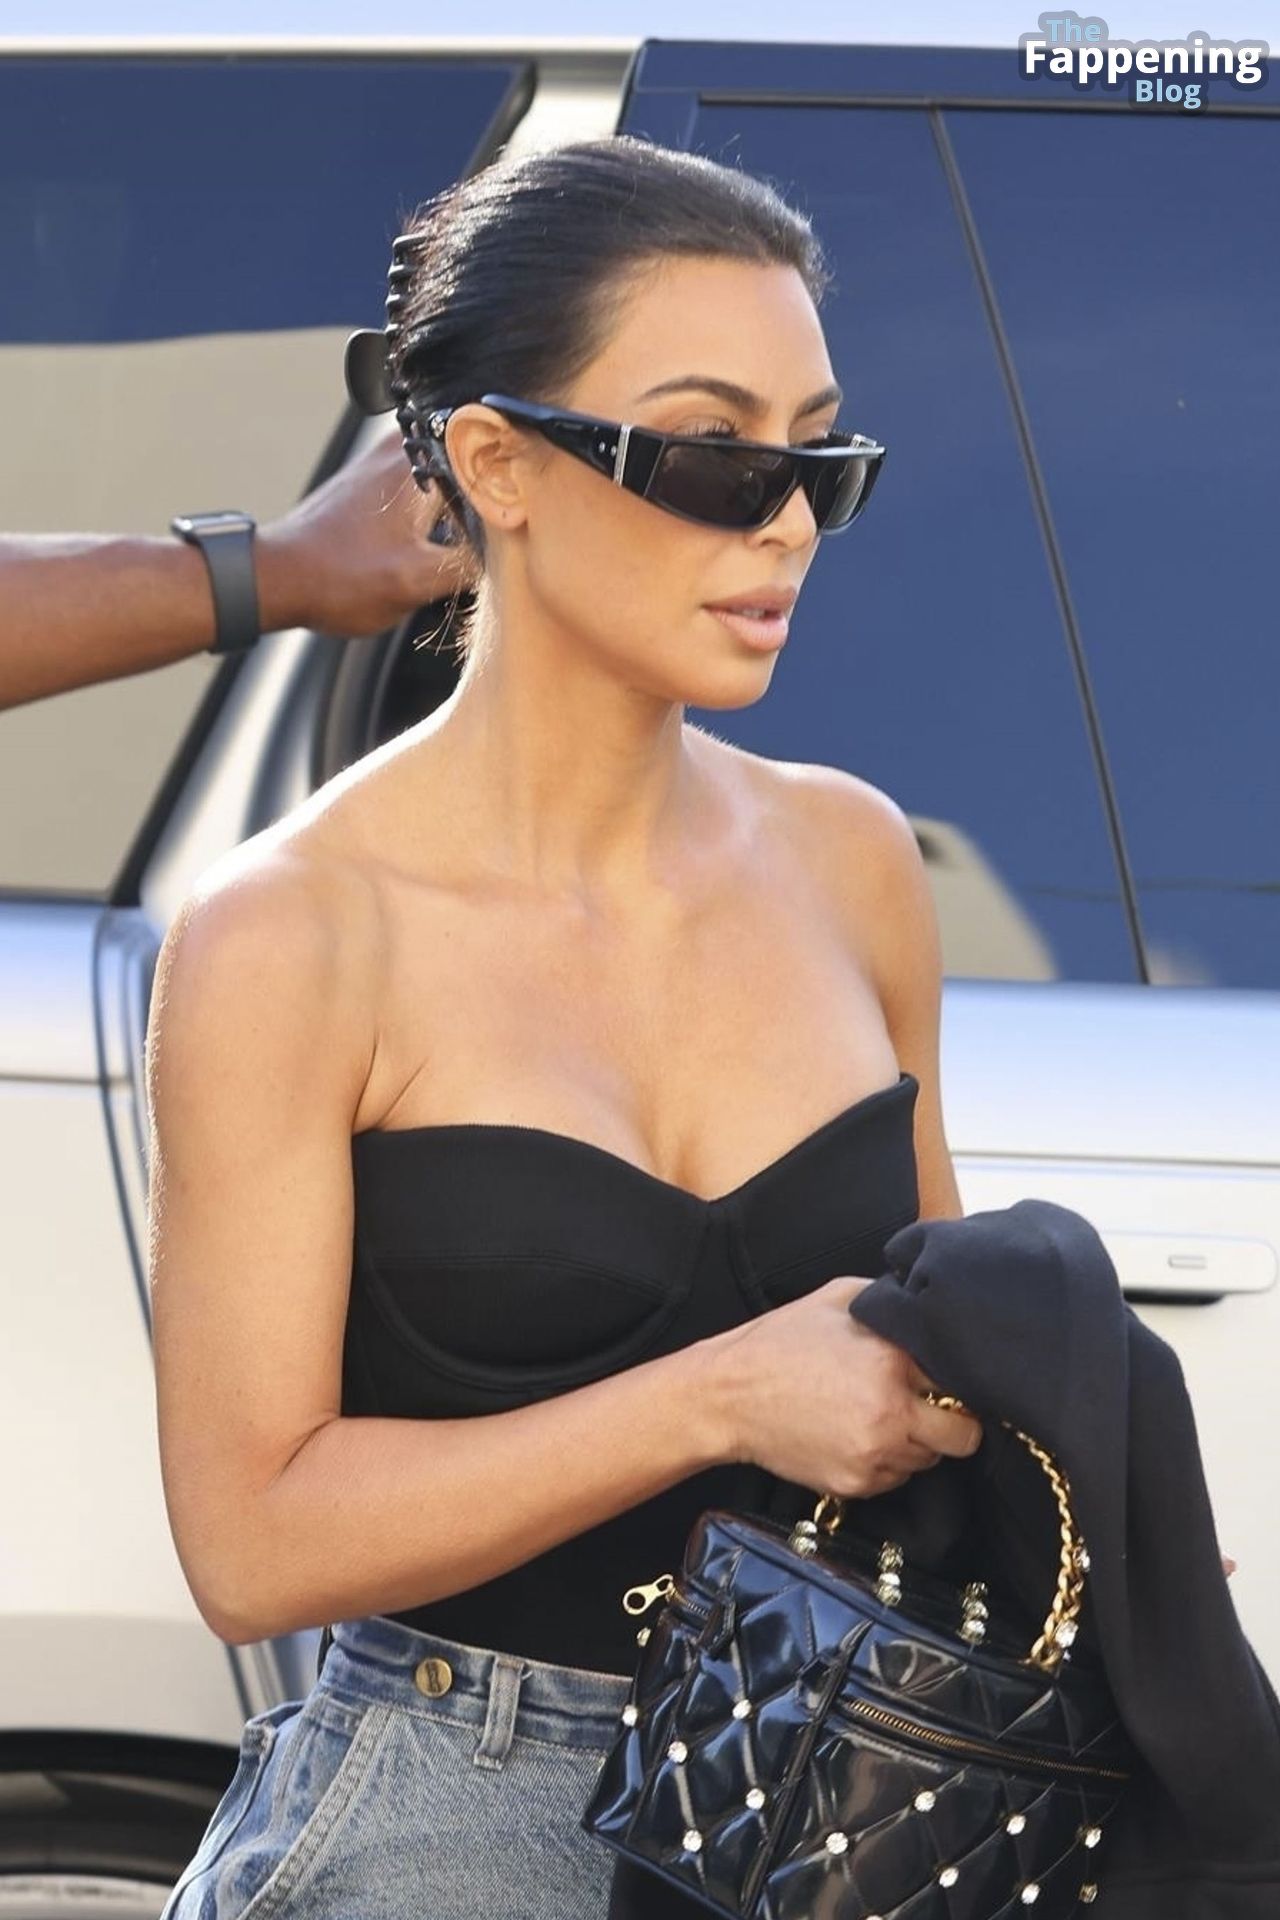 Kim-Kardashian-Sexy-78-The-Fappening-Blog-1.jpg